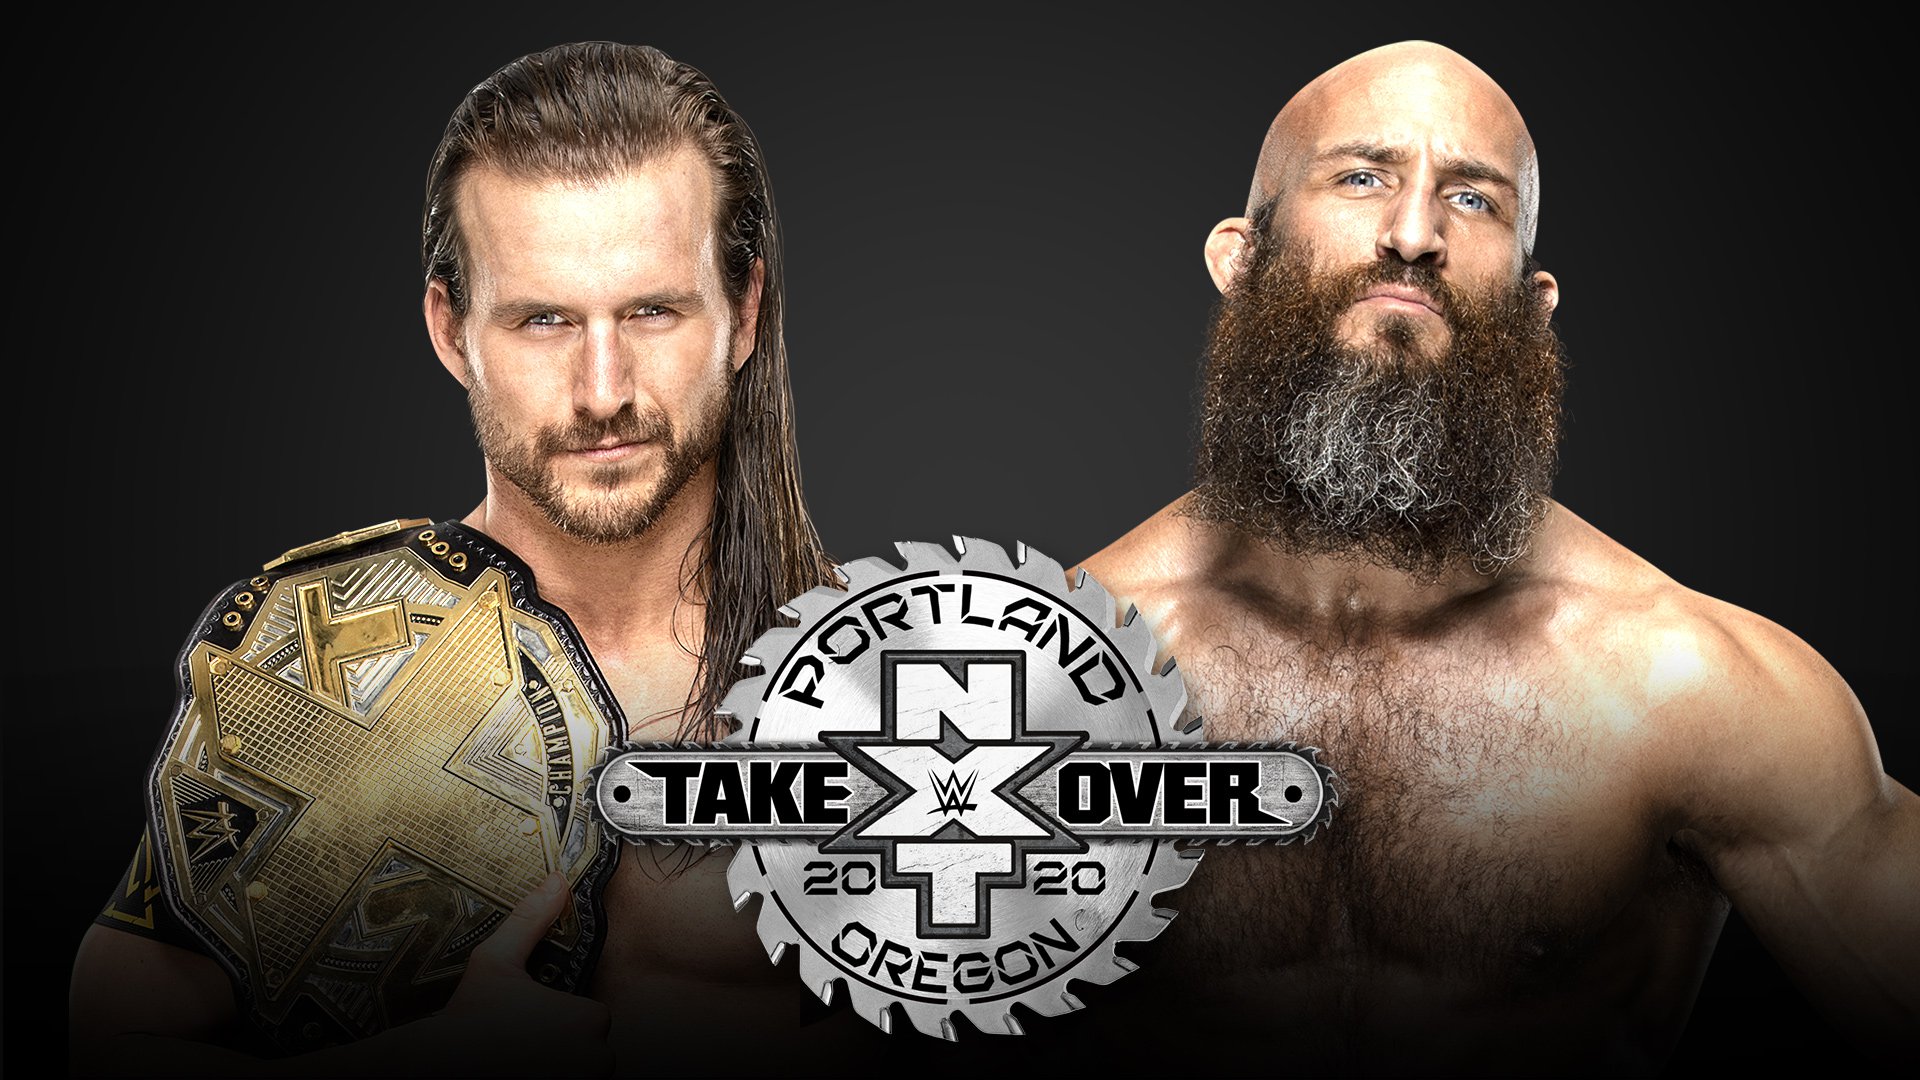 NXT TakeOver Portland: Adam Cole vs Tommaso Ciampa